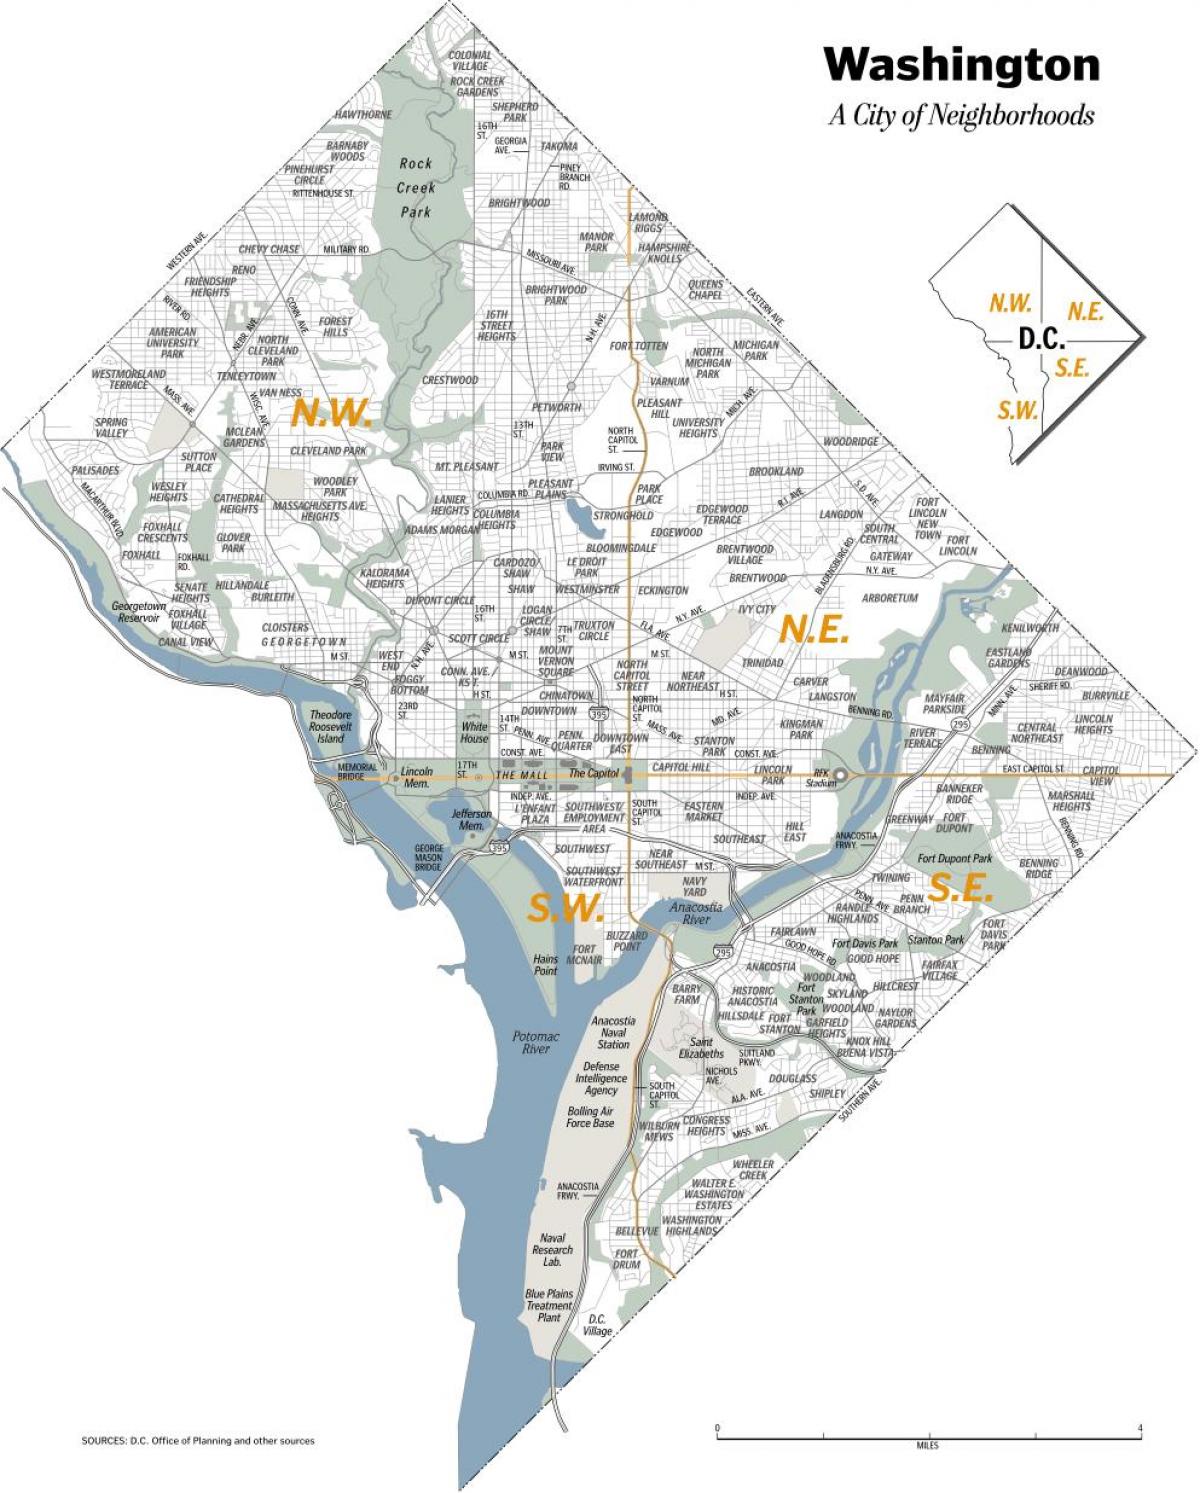 Plan des quartiers de Washington DC